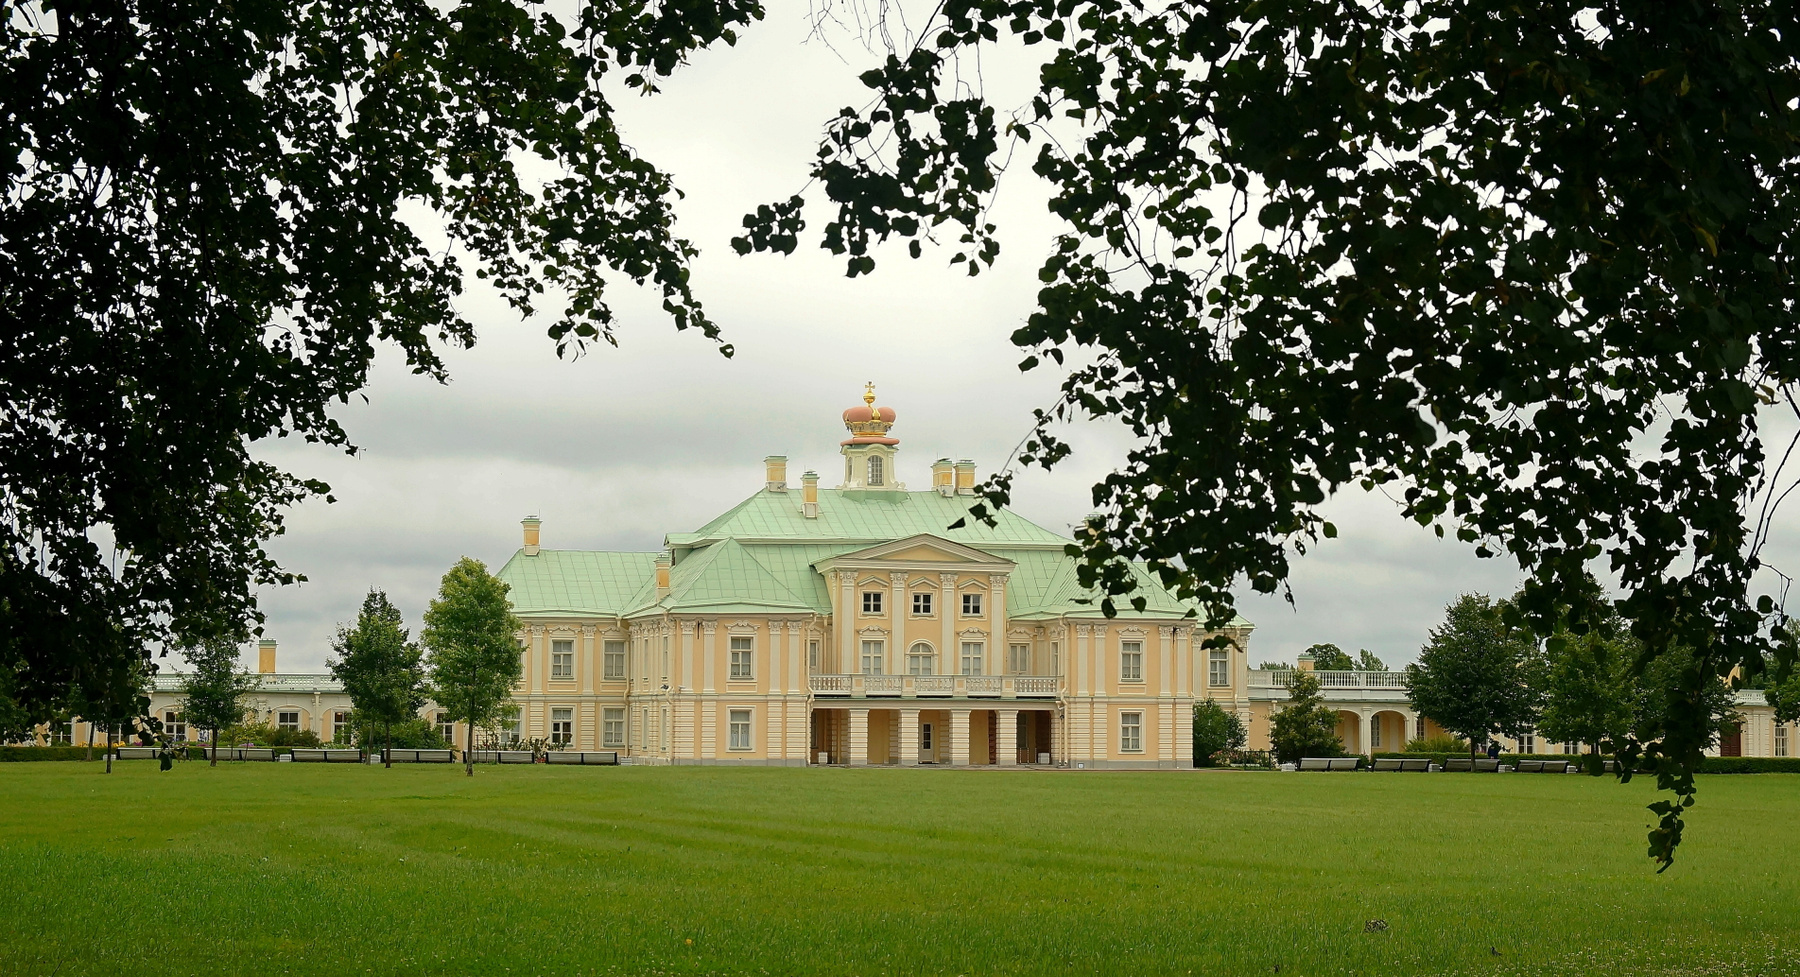 Дворец князя Меньшикова в Ораниенбауме Ораниенбаум дворец Меньшикова парк Лето